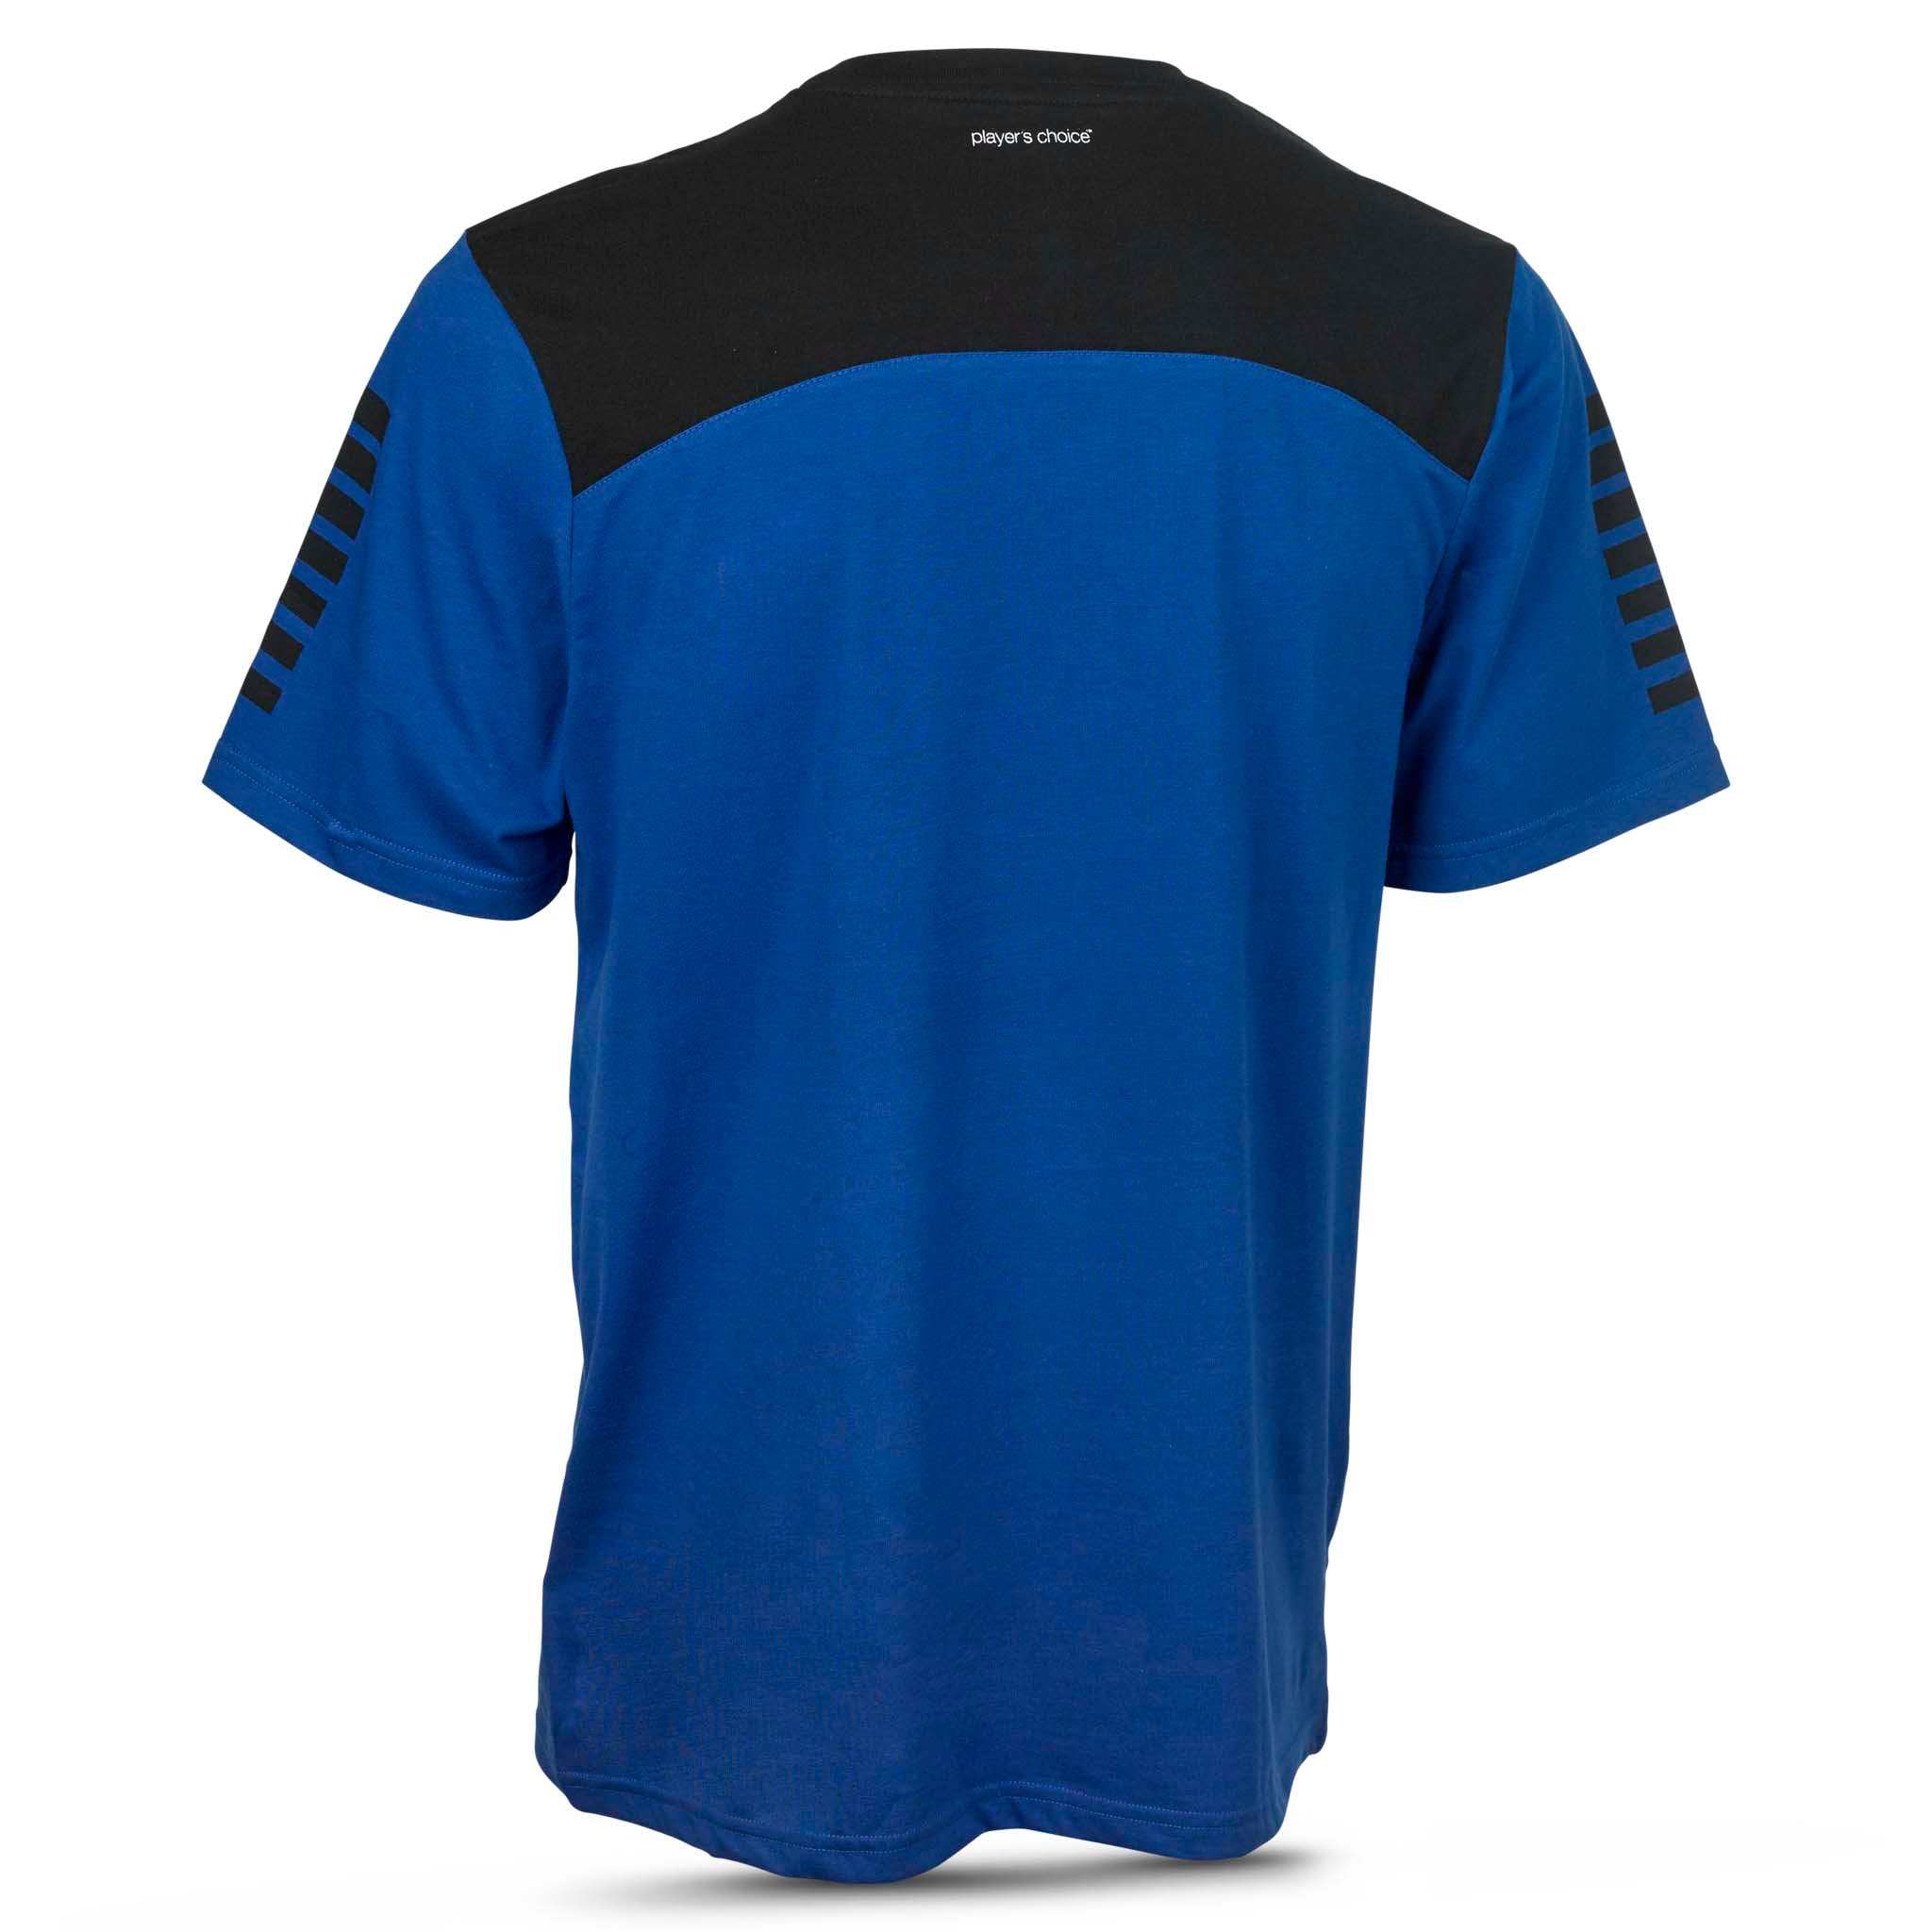 Oxford T-Shirt #farve_blå/sort